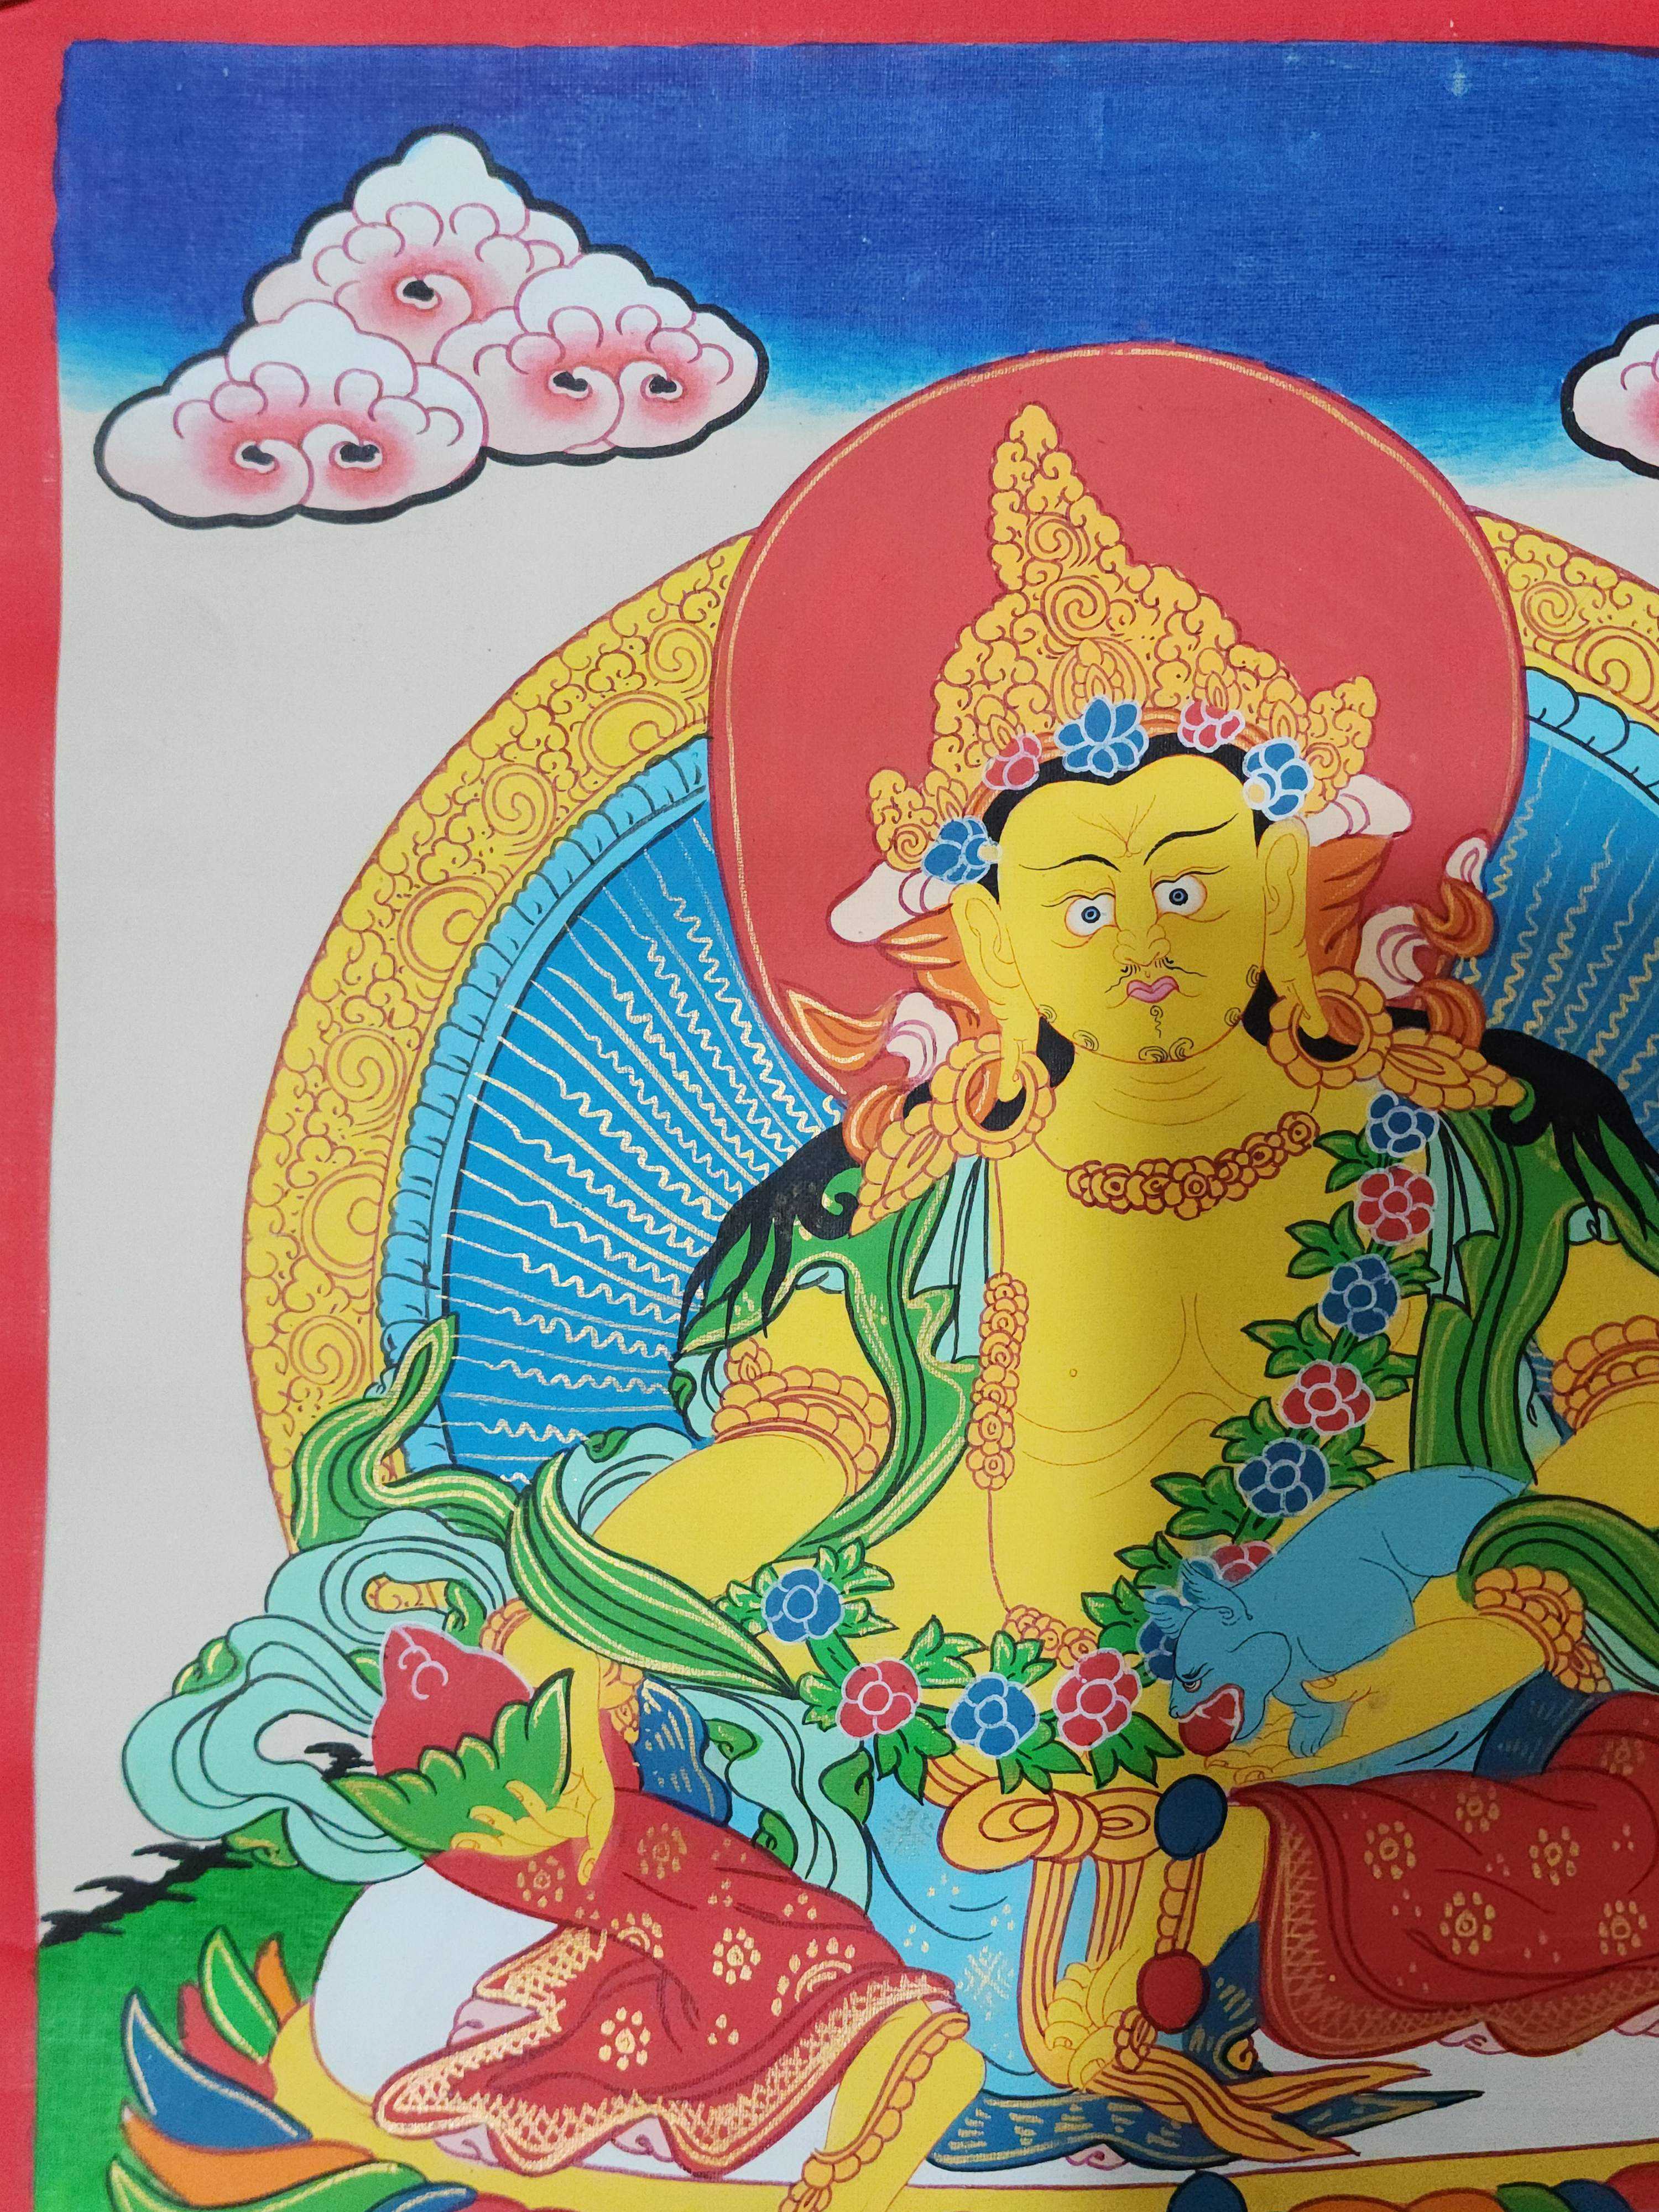 Yellow Jambhala Thangka, Buddhist Traditional Painting, Hand Painted